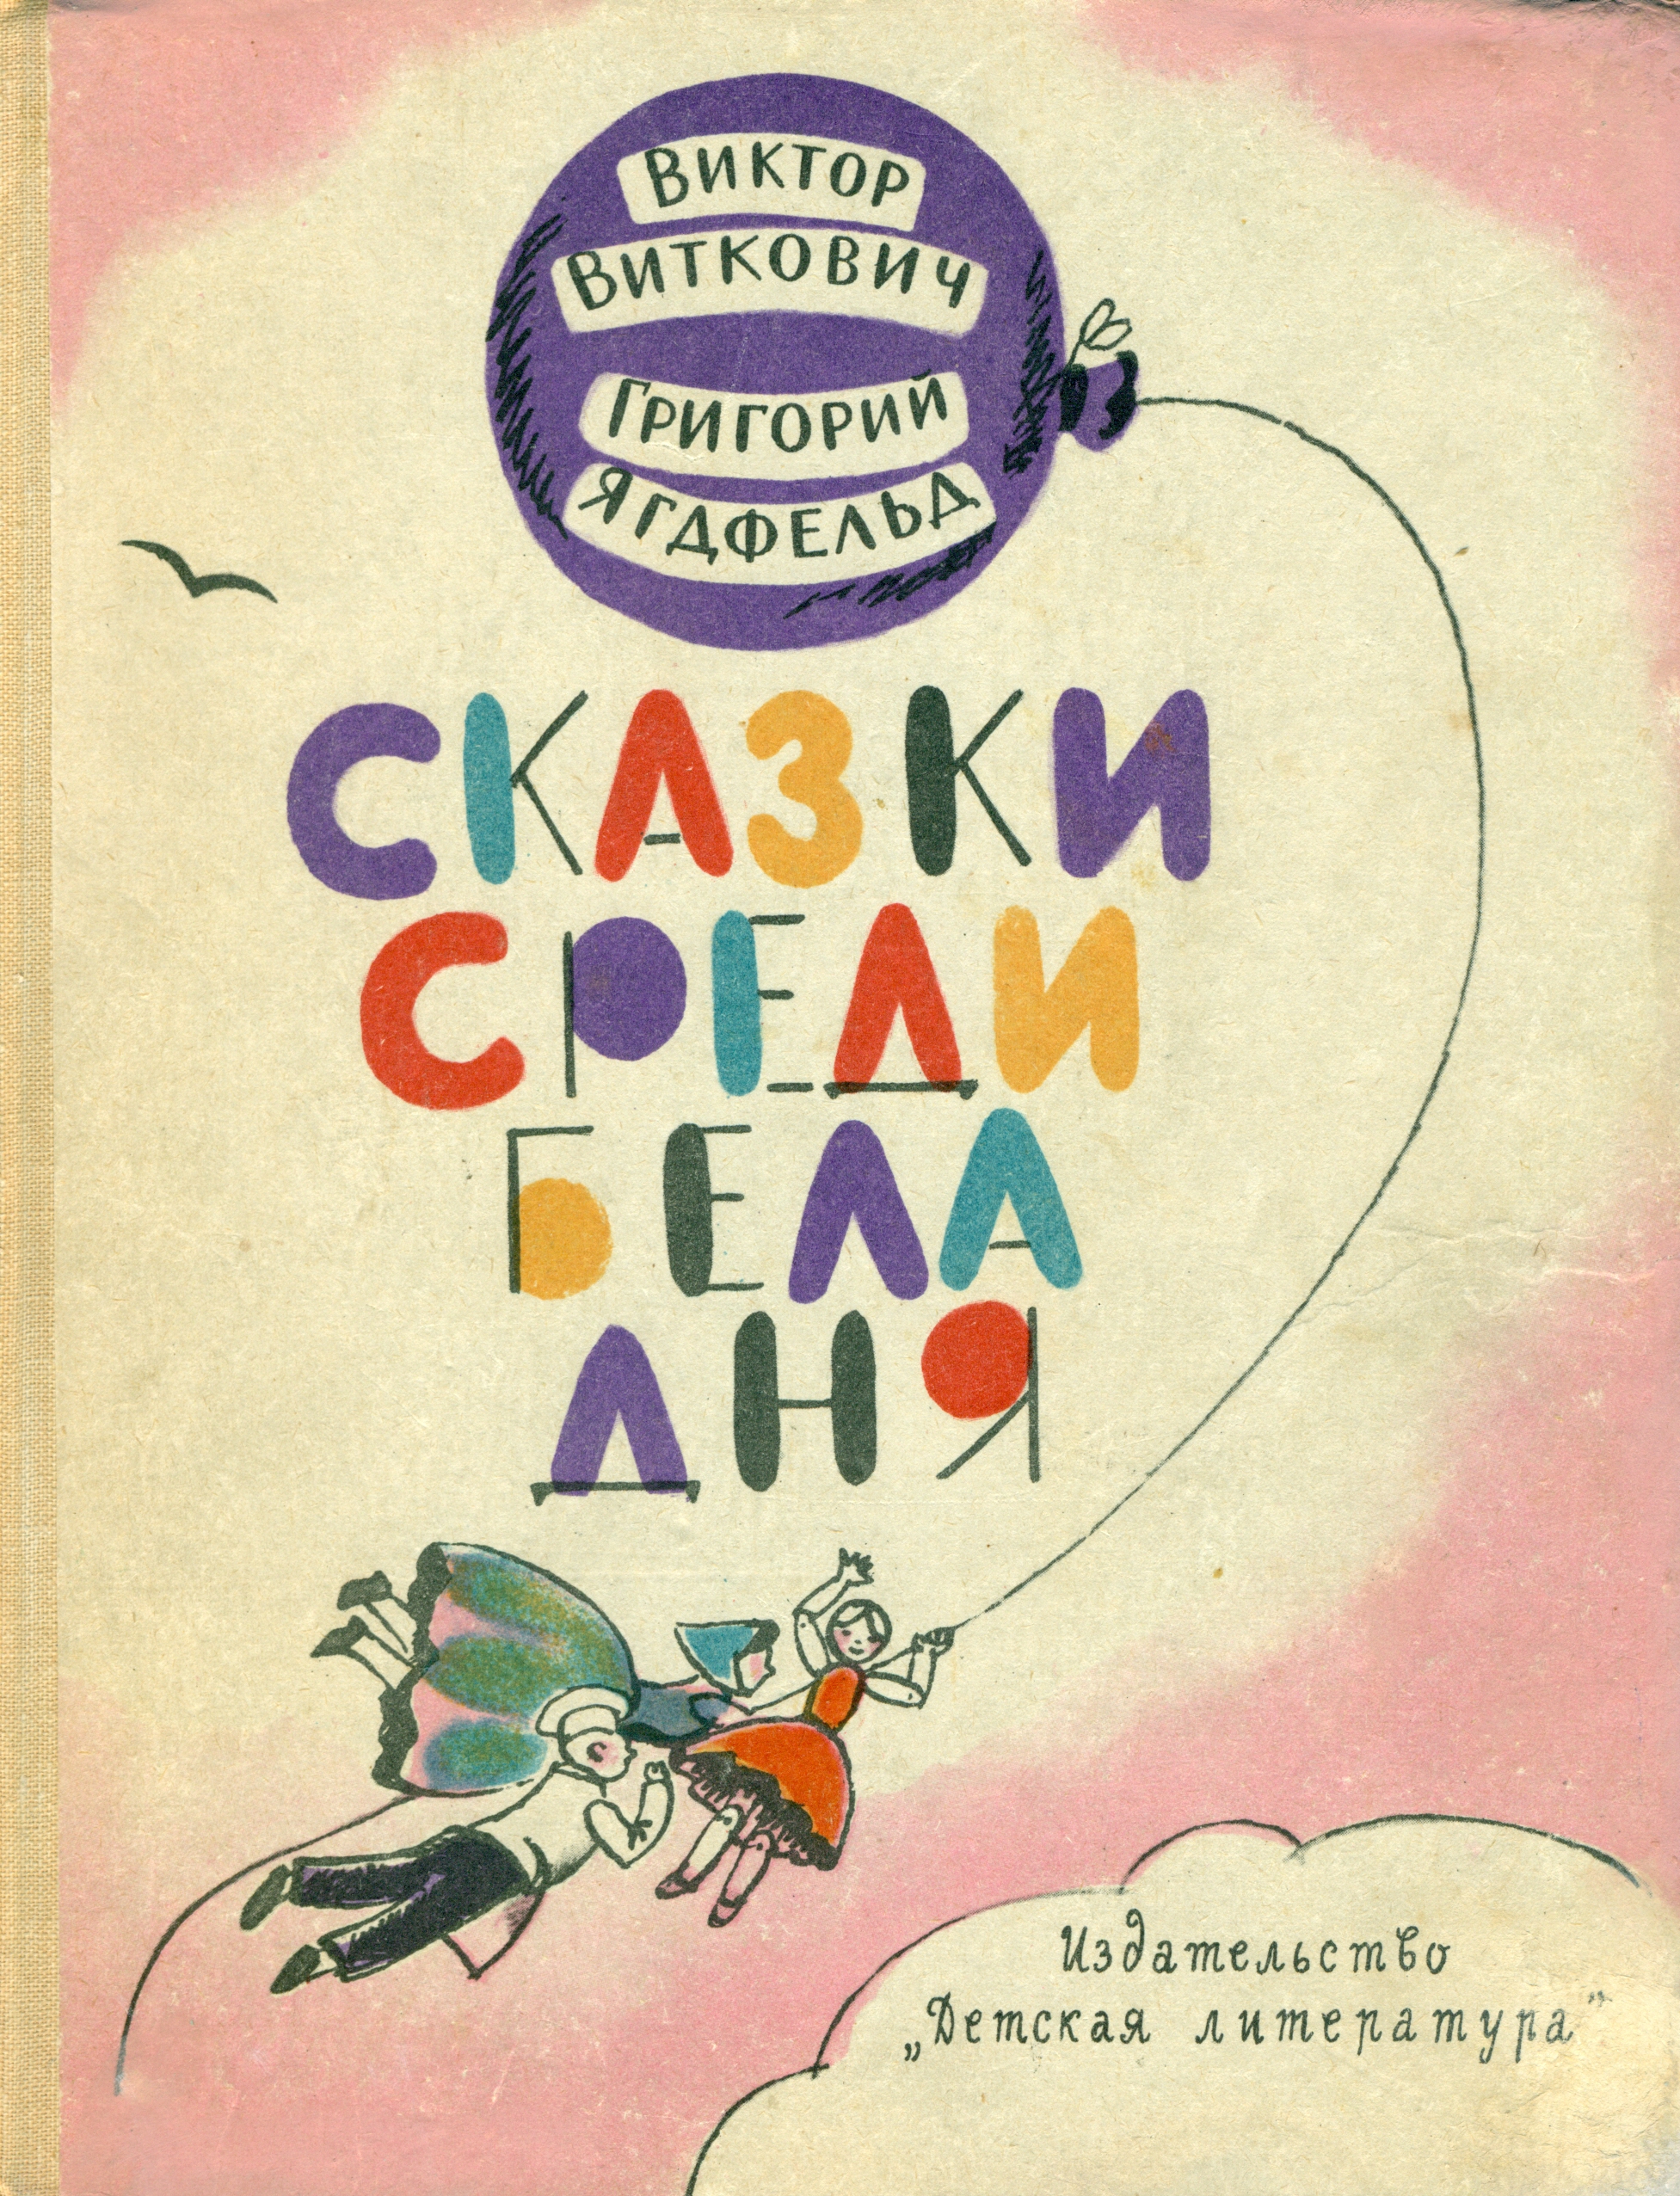 Обложка издания 1965 г.